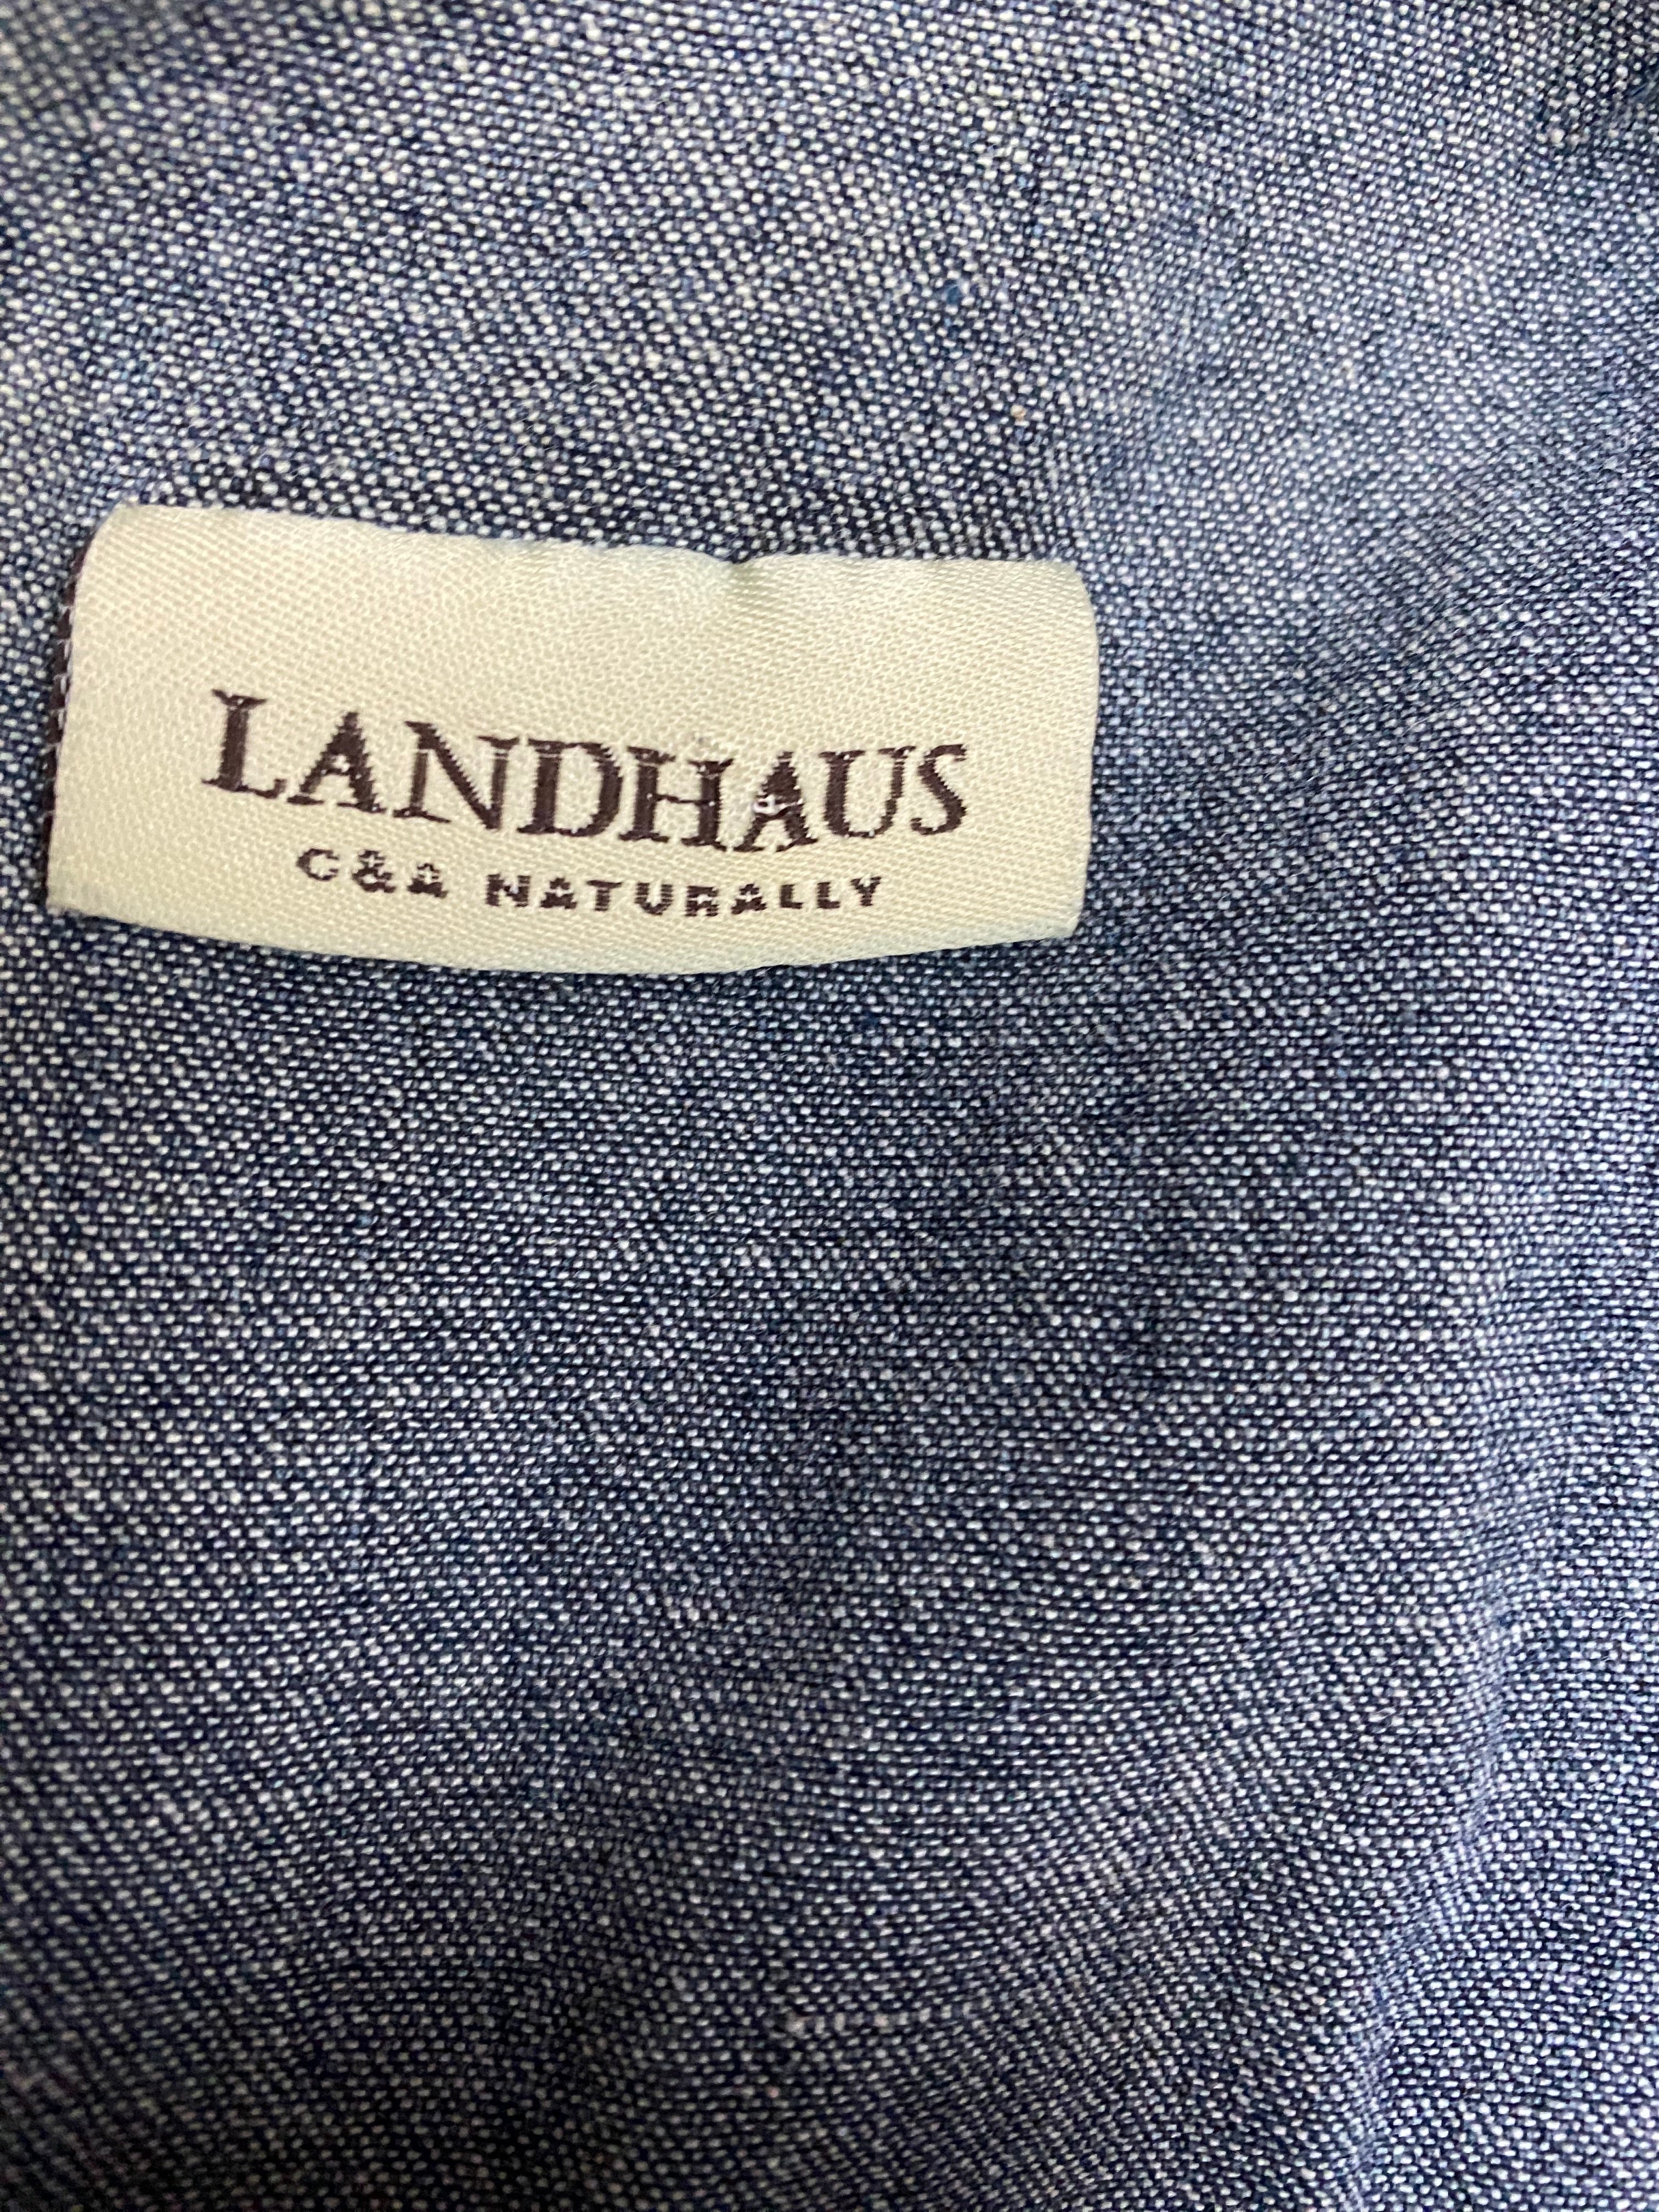 Vintage Landhauskleid lang Rock und Mieder Zweiteiler Jeans Demin Gr.40